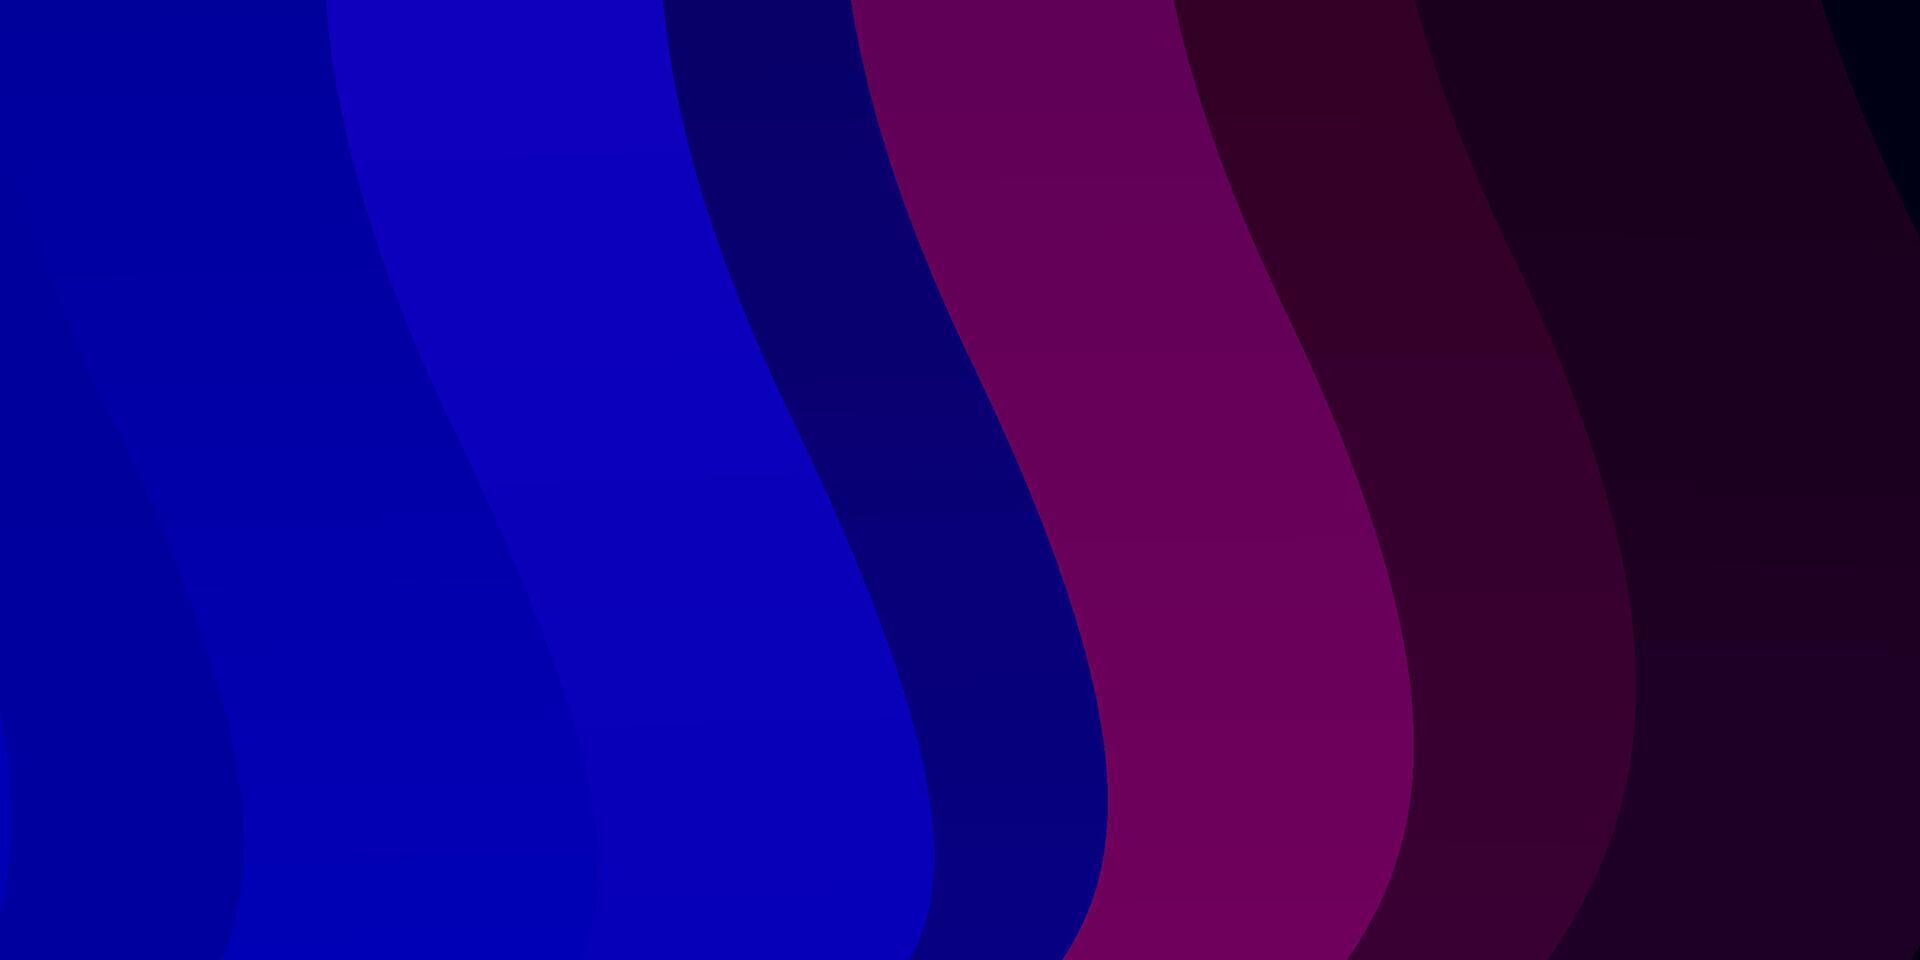 Telón de fondo de vector azul claro, rojo con arco circular.